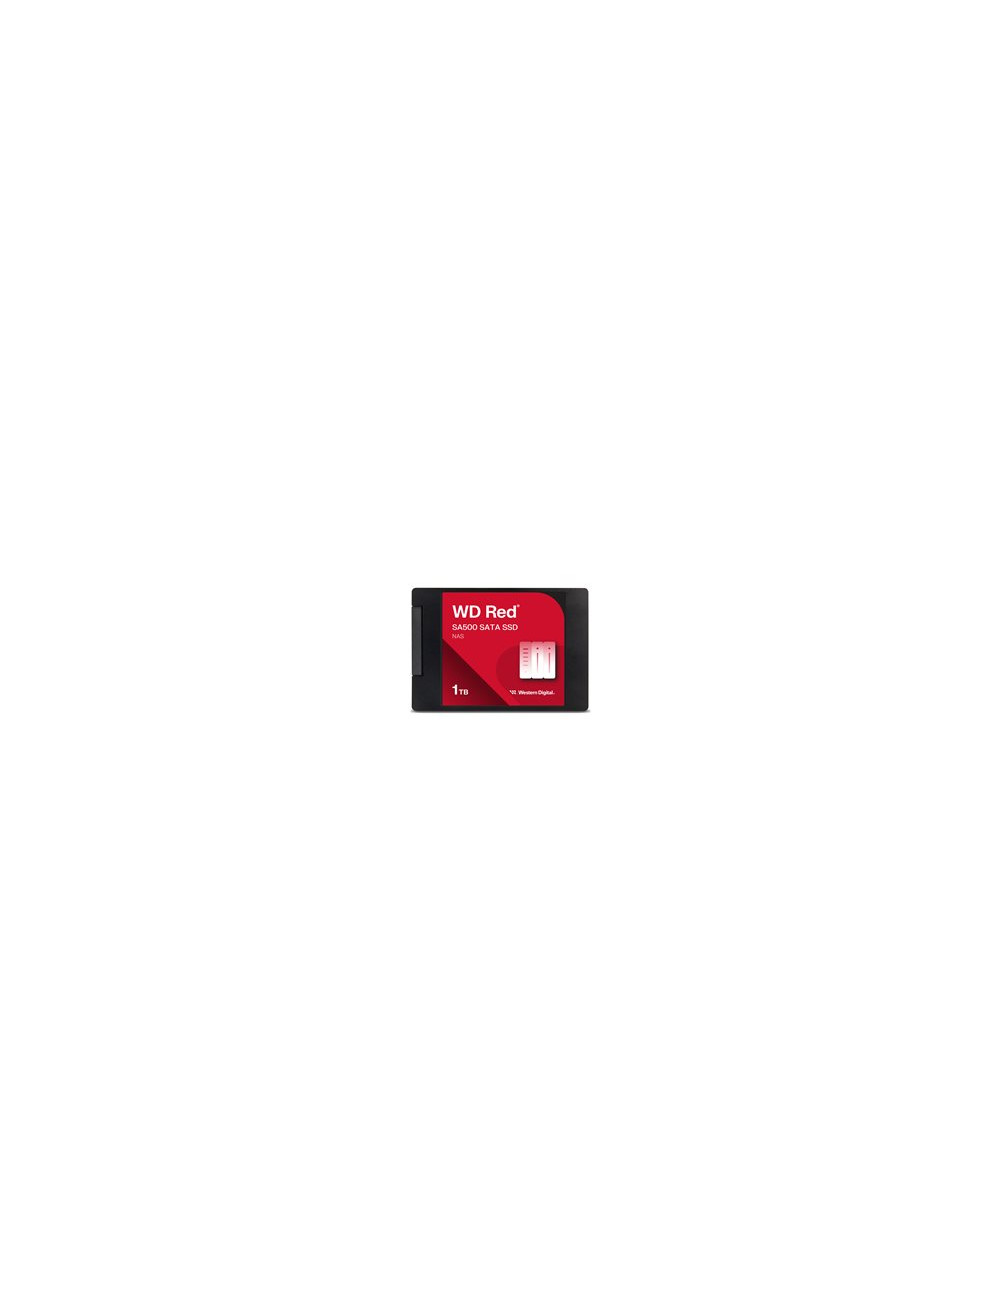 WD Red SSD SA500 NAS 1TB 2.5inch SATA